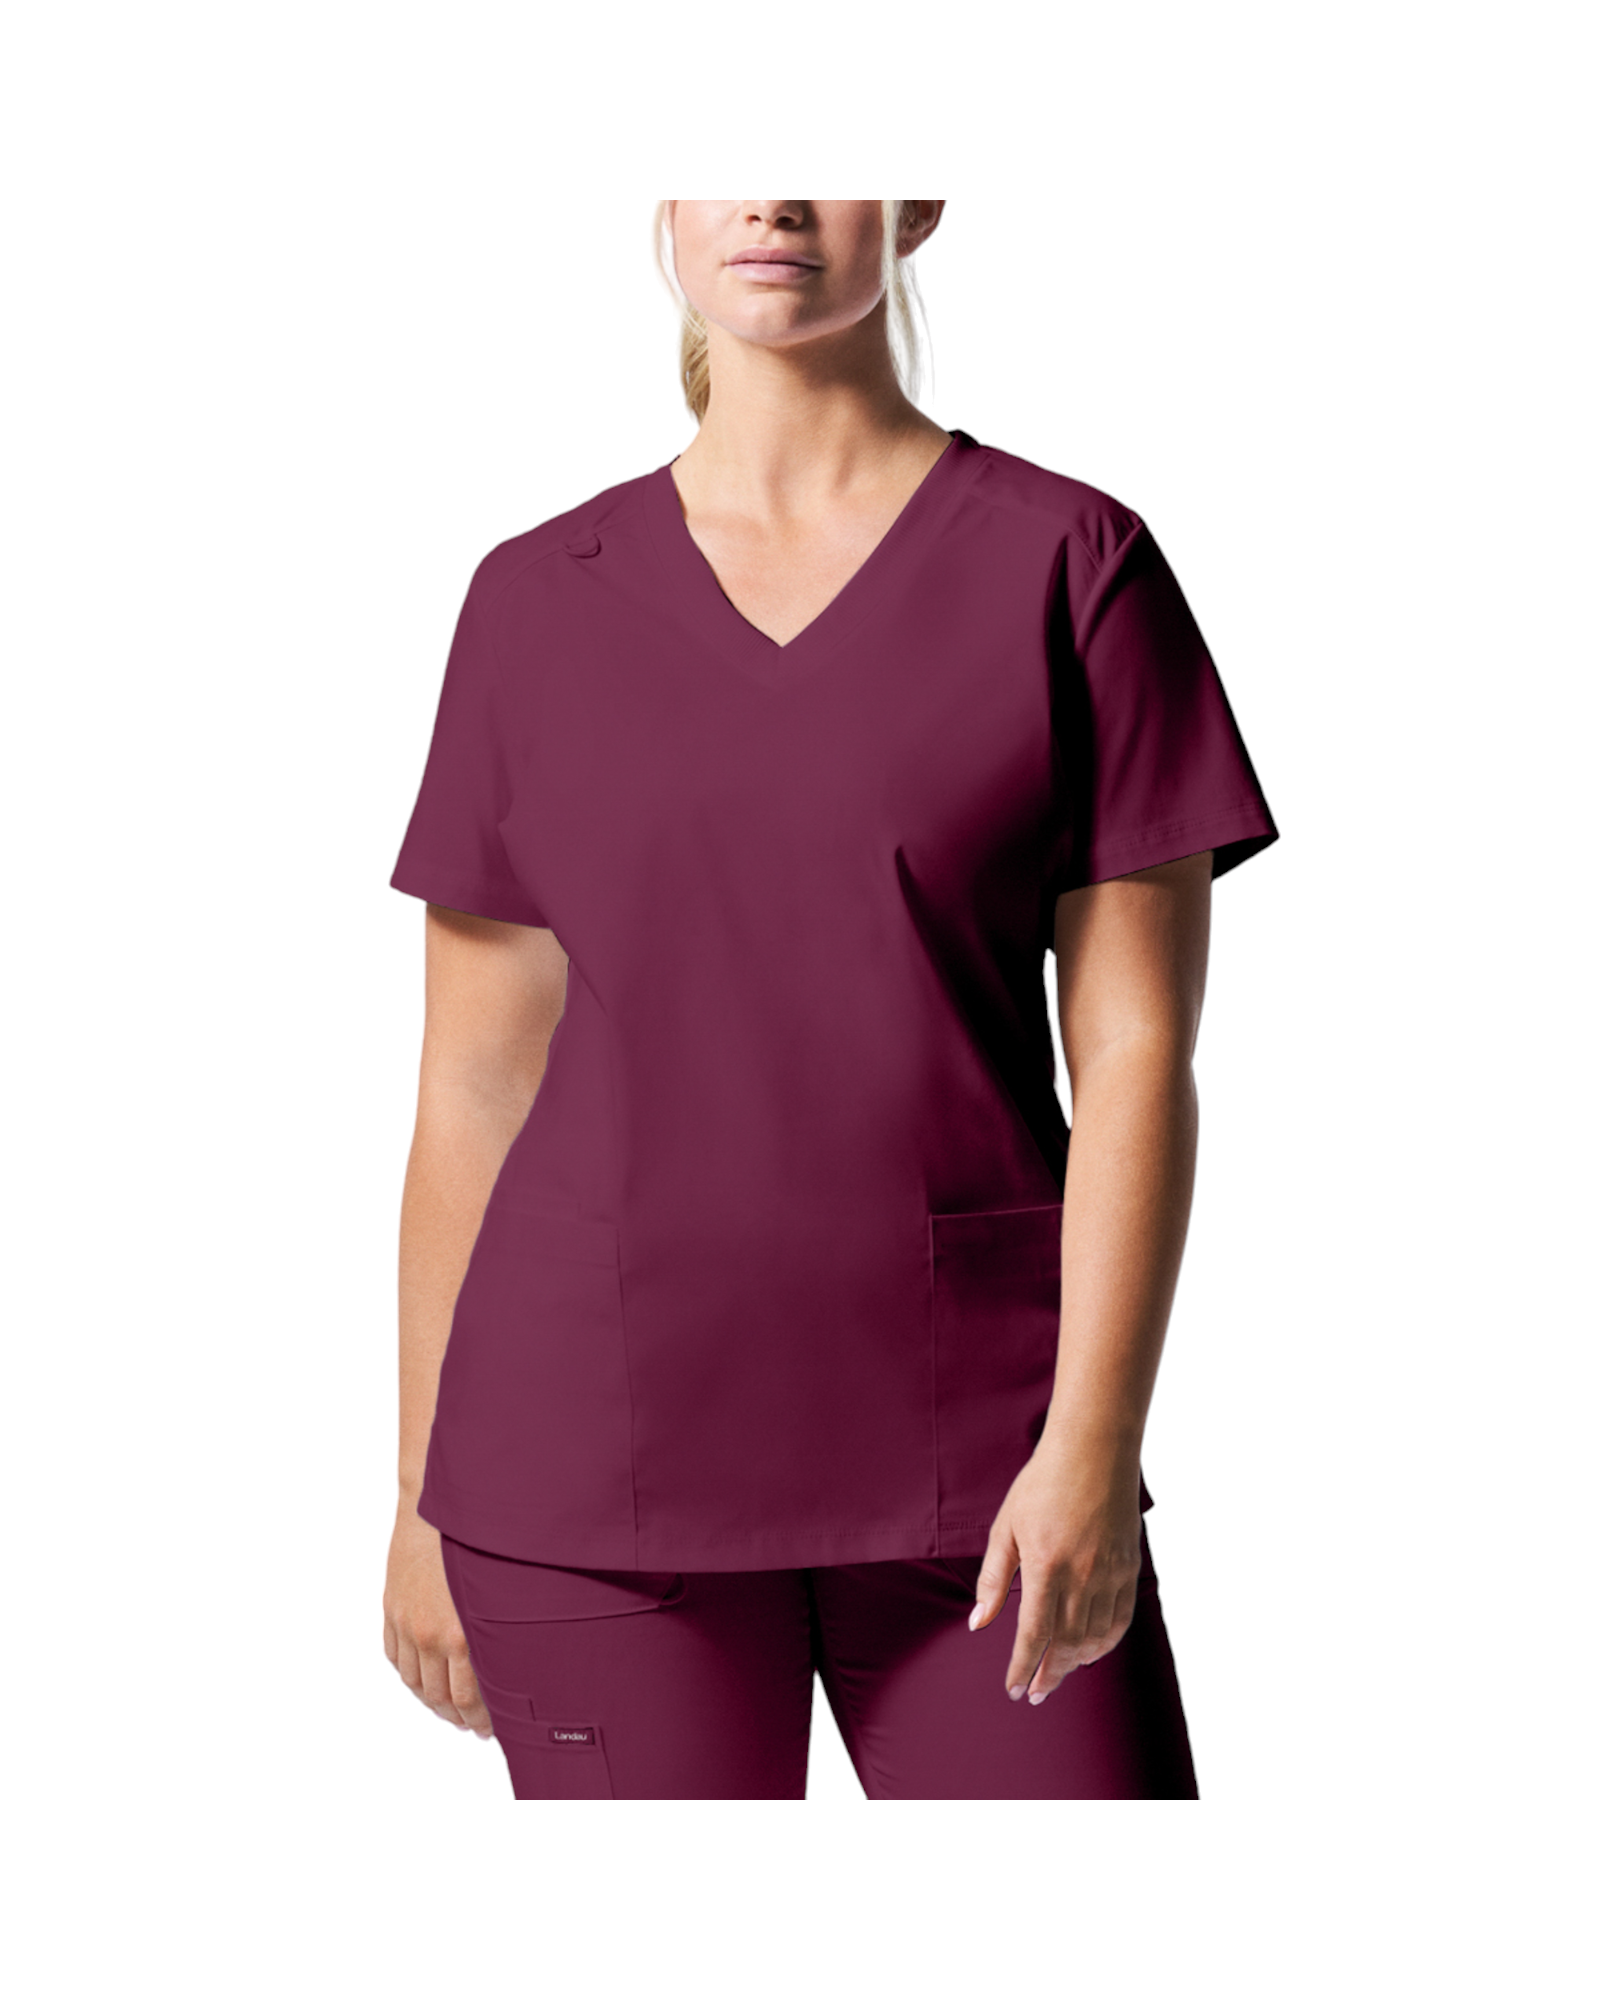 Uniforme de marque landau pour femmes taille plus. Travailleuses du domaine de la santé. LT105-OS couleur Bourgogne, col en V.